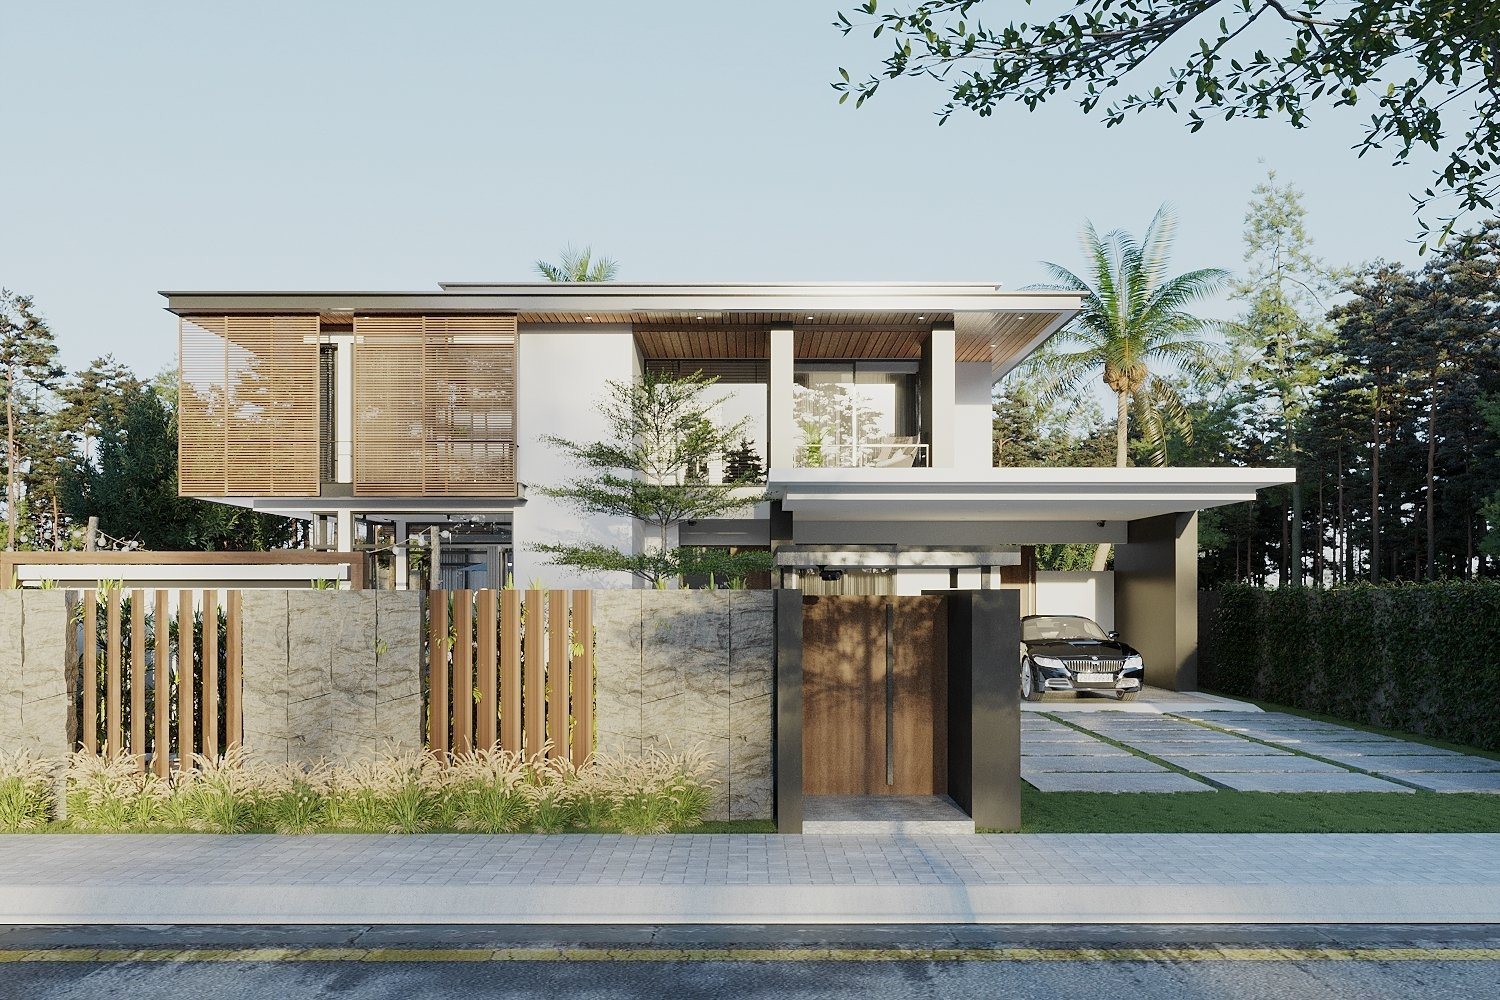 Mẫu biệt thự 2 tầng có bể bơi bên hông căn nhà nổi bật với lối kiến trúc bề thế. Chất liệu gỗ tự nhiên cao cấp đan xen cùng khối vật liệu vững chắc tạo nên không gian sống hiện đại và đẳng cấp